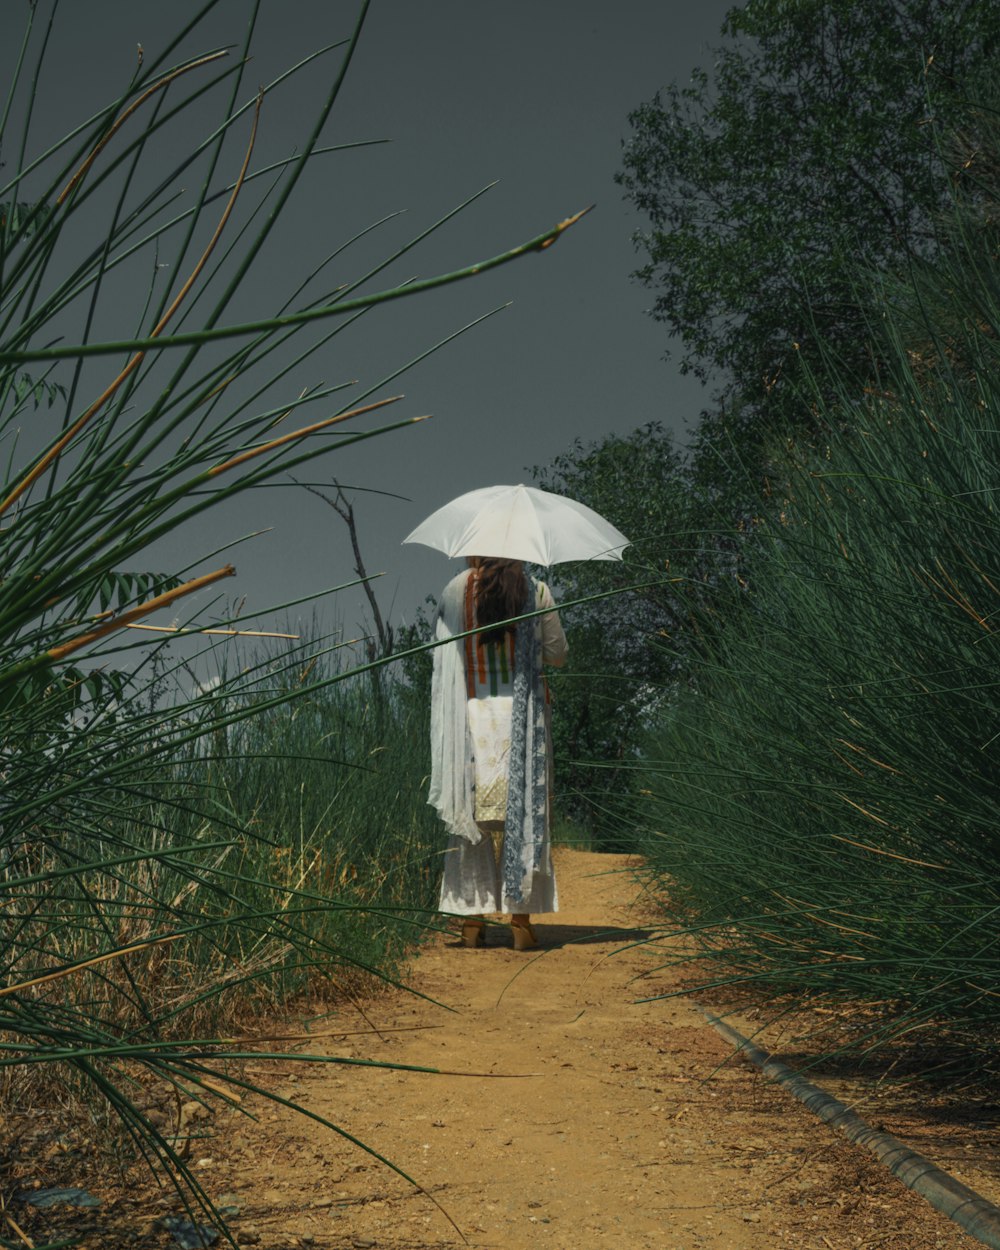 Mujer en vestido blanco de pie en el campo de hierba verde durante el día